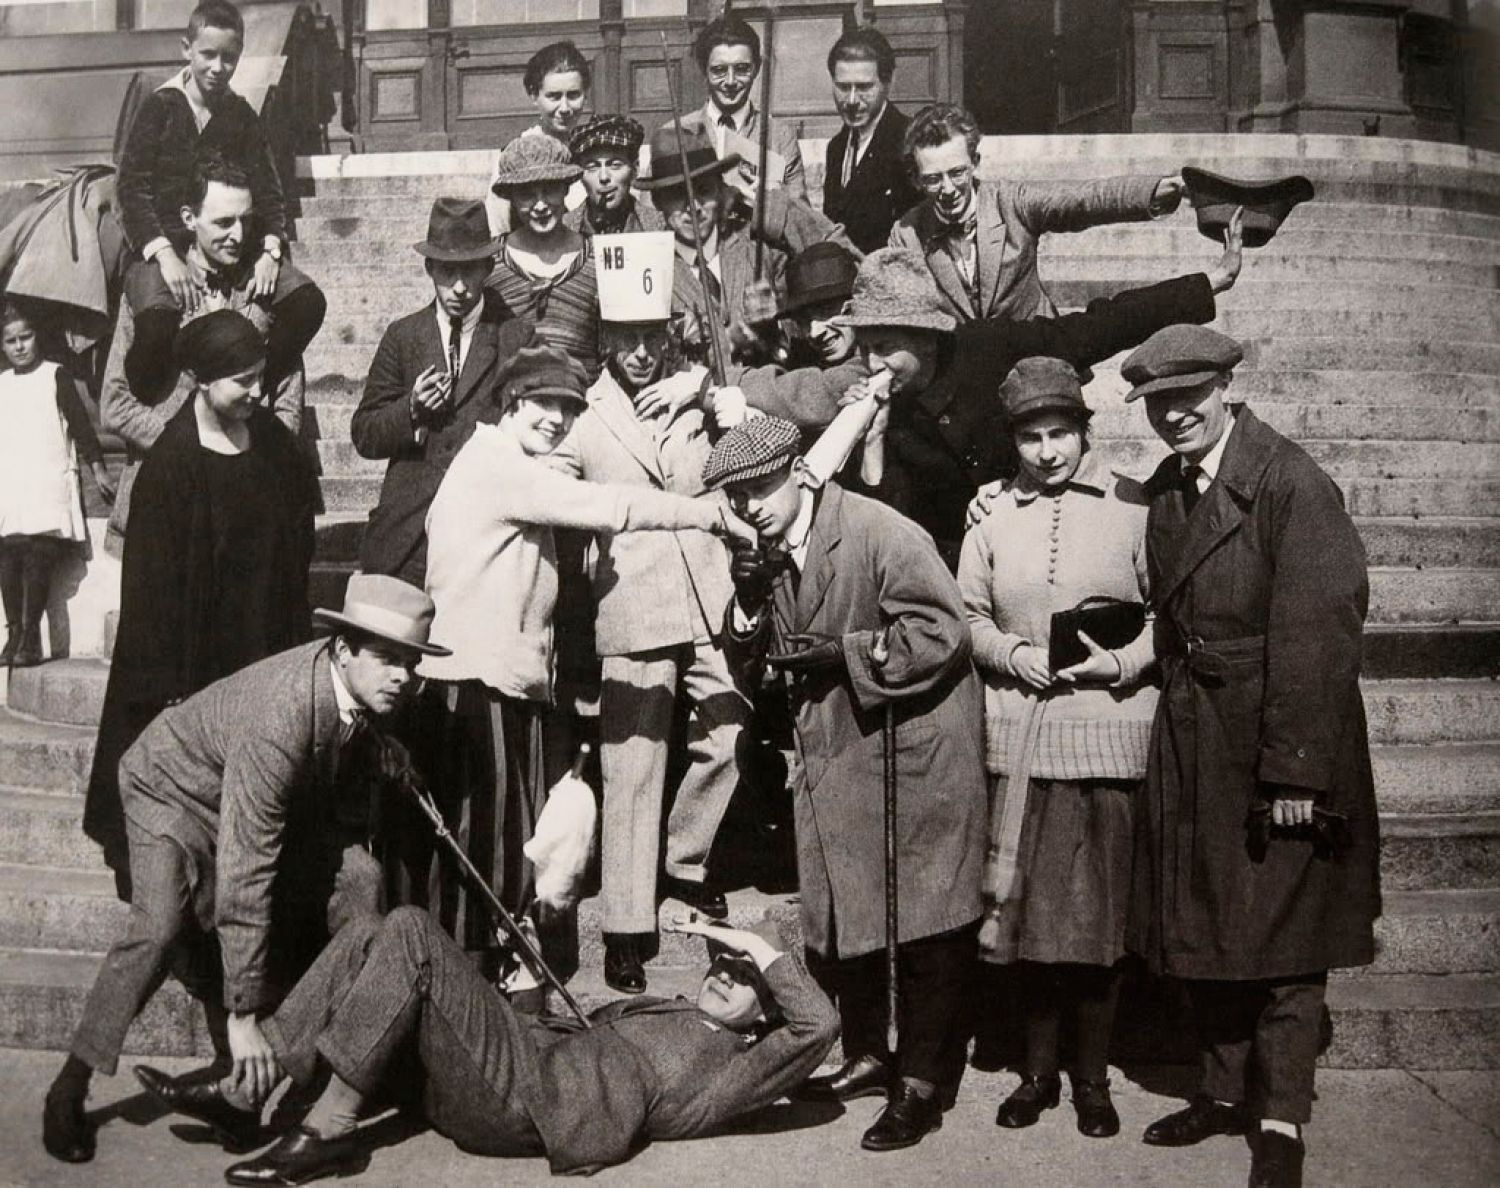 Encontro de construtivistas e dadaístas em Weimar, 25 ou 26 de Setembro de 1922